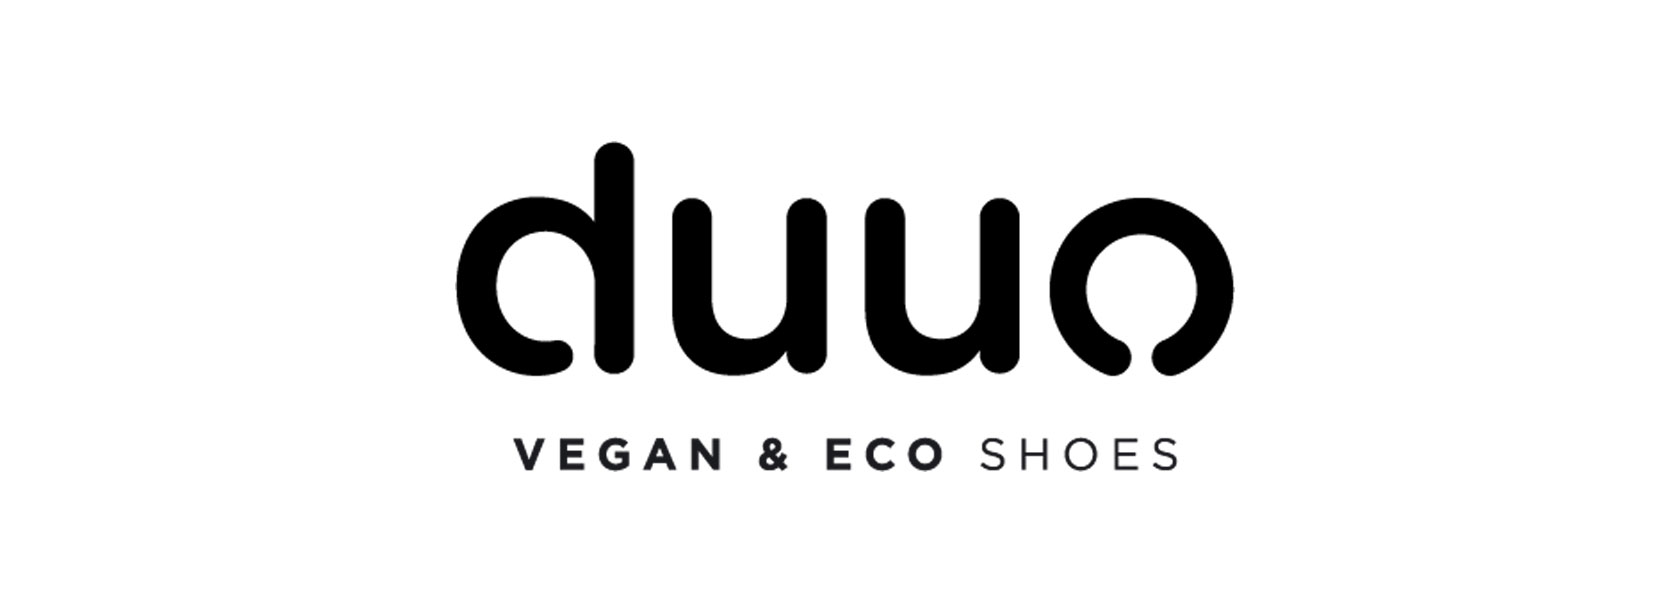 Duuo vegane Schuhe in Ihrem persönlichen und traditionellen Familienunternehmen ▷ seit über 170 Jahren in der Schweiz. Jetzt einkaufen. ✓